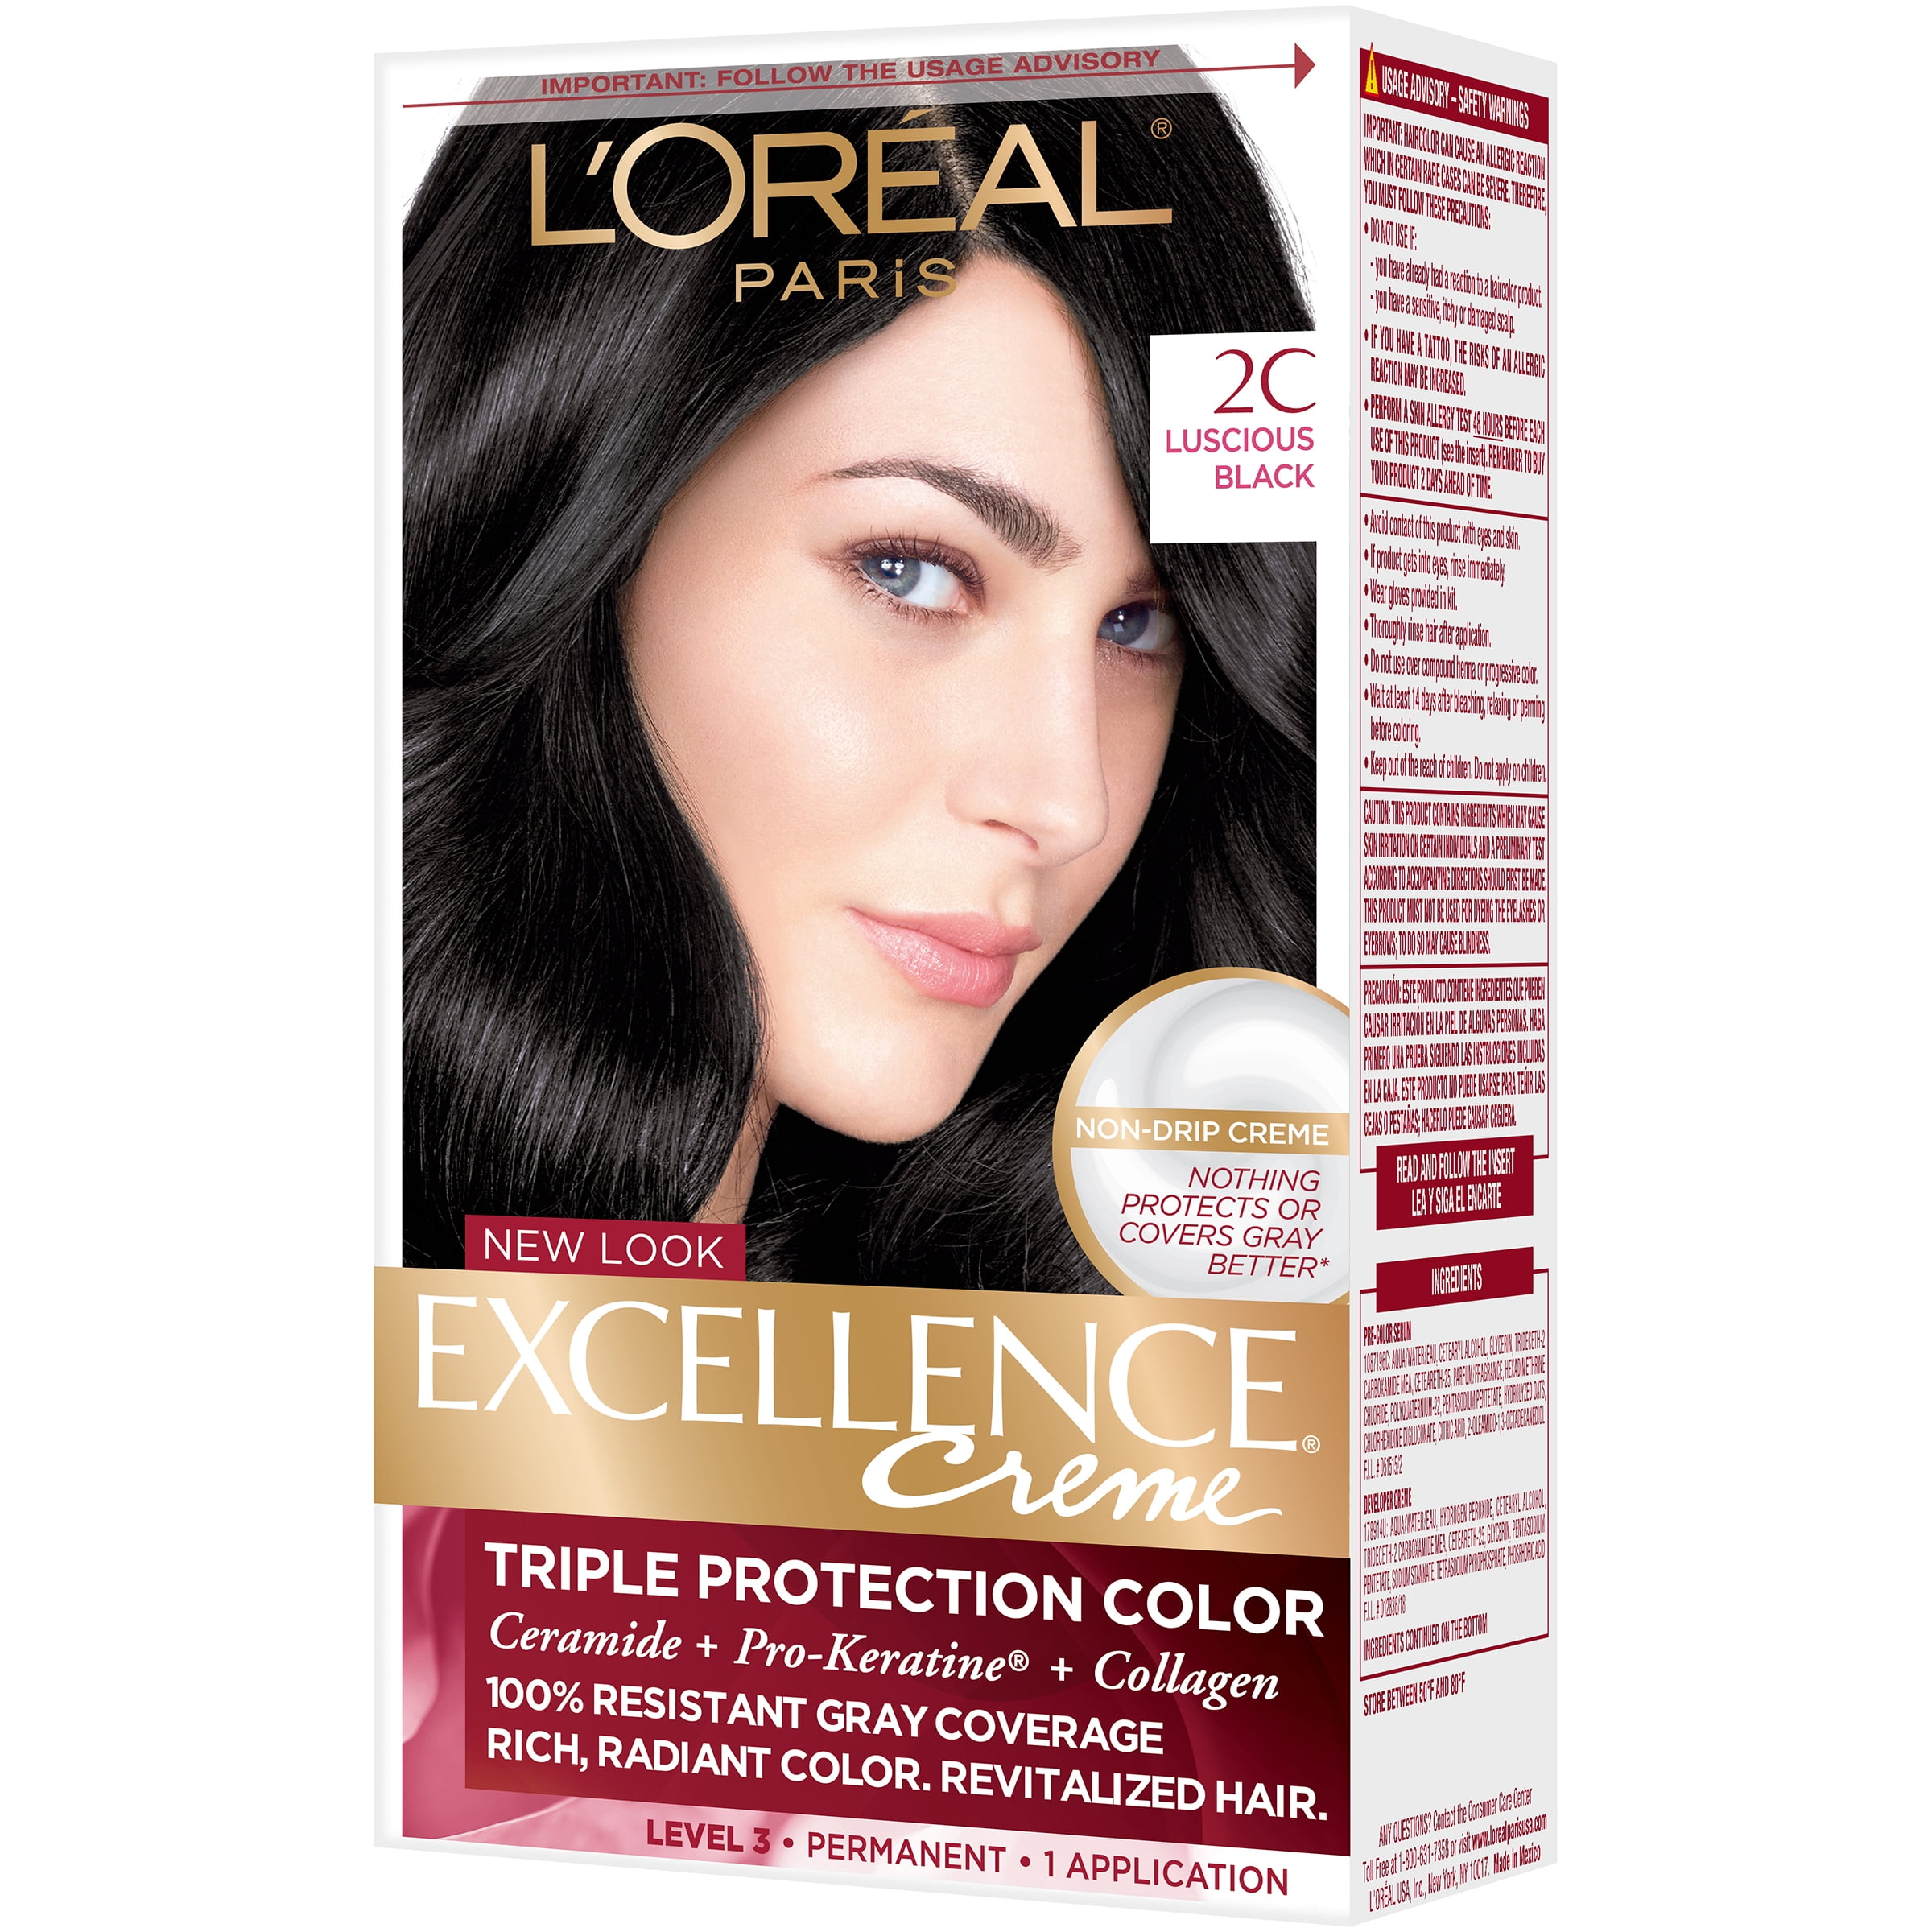 L'Oreal Paris Excellence Creme Permanent Hair Color Kit, 2C Luscious Black  